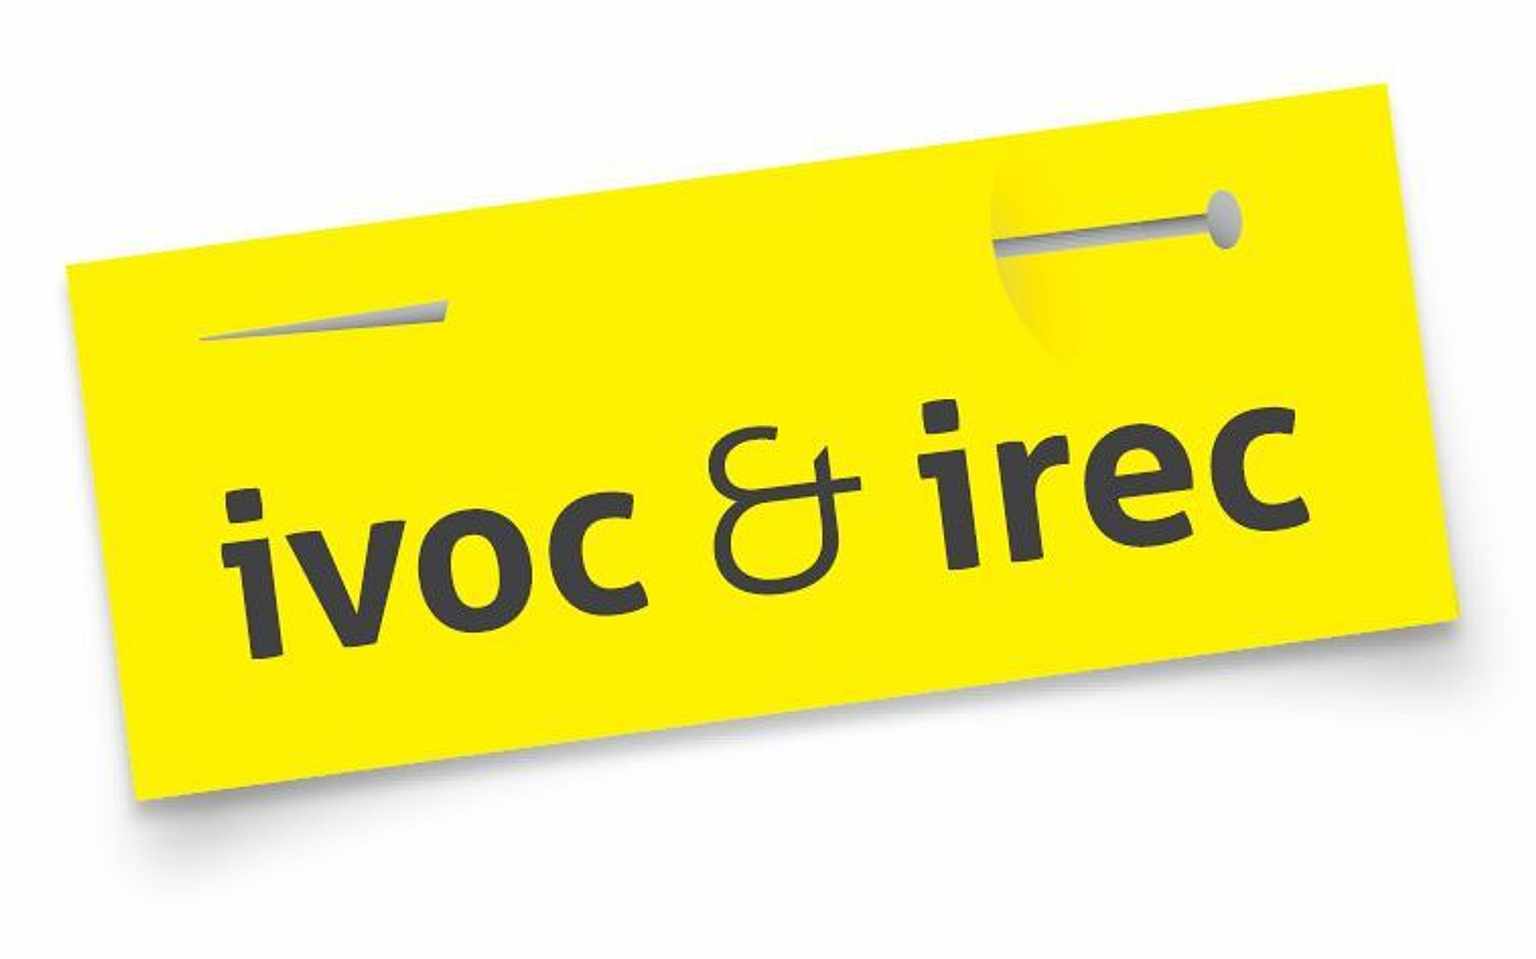 IVOC IREC